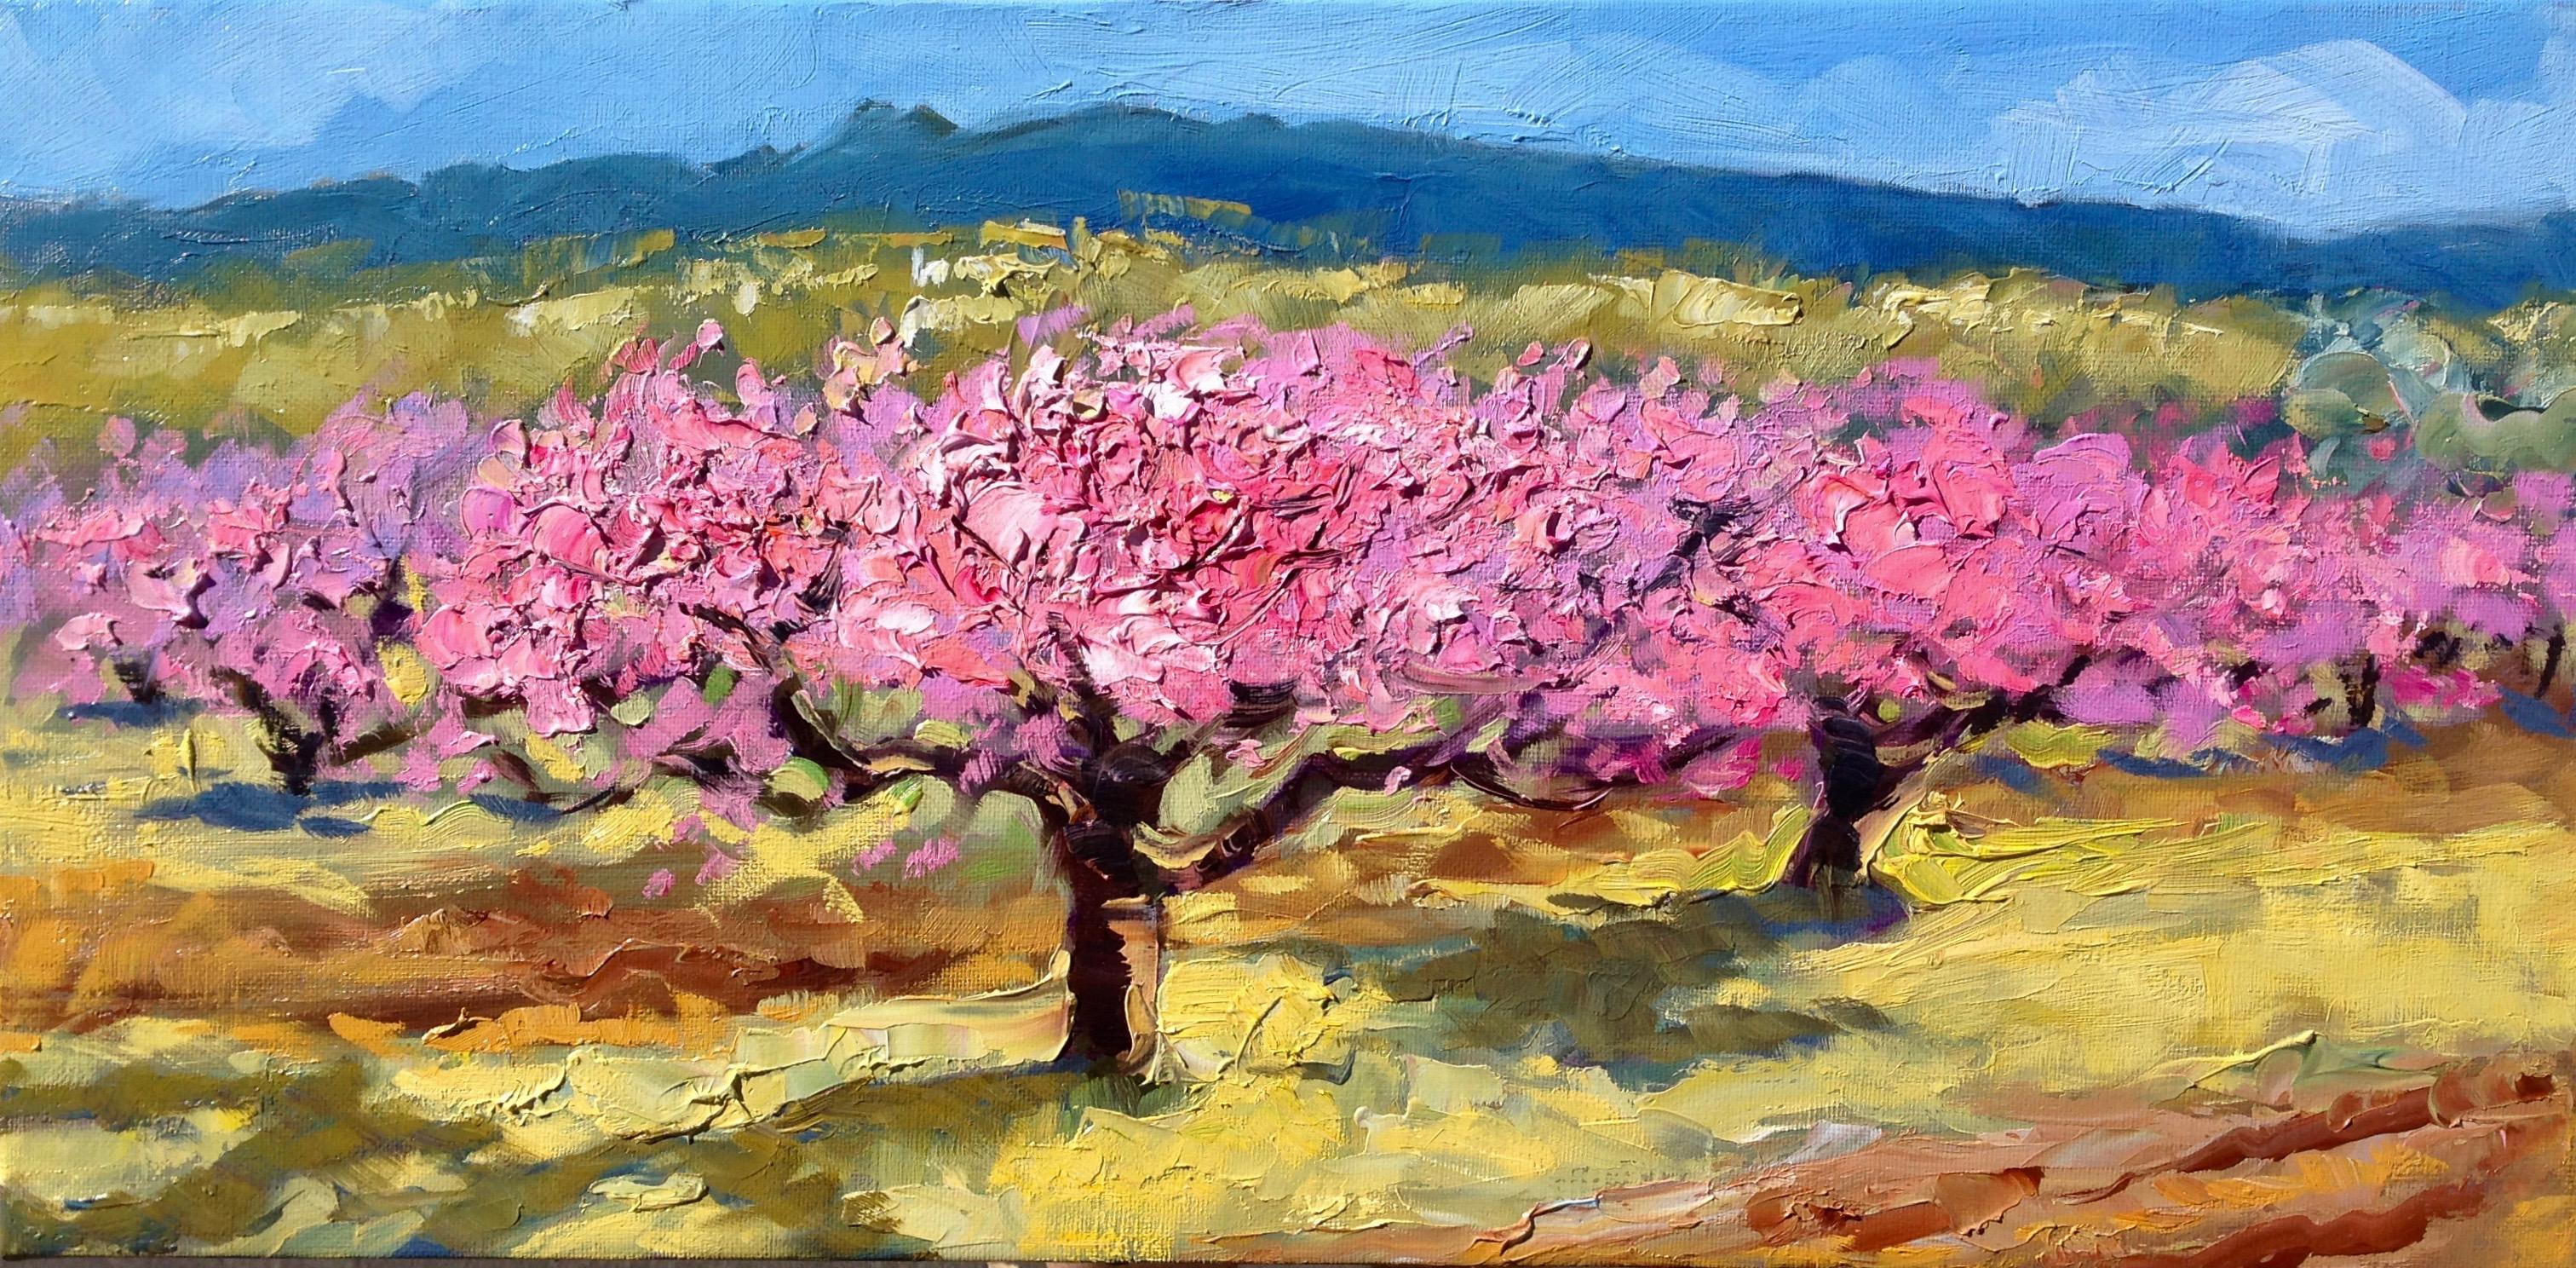 Landscape Painting Maria Bertrán - « Apricot Blossoms In The Field » (Les fleurs d'abondance dans le champ)  Peinture à l'huile impressionniste moderne et impressionniste d'Espagne